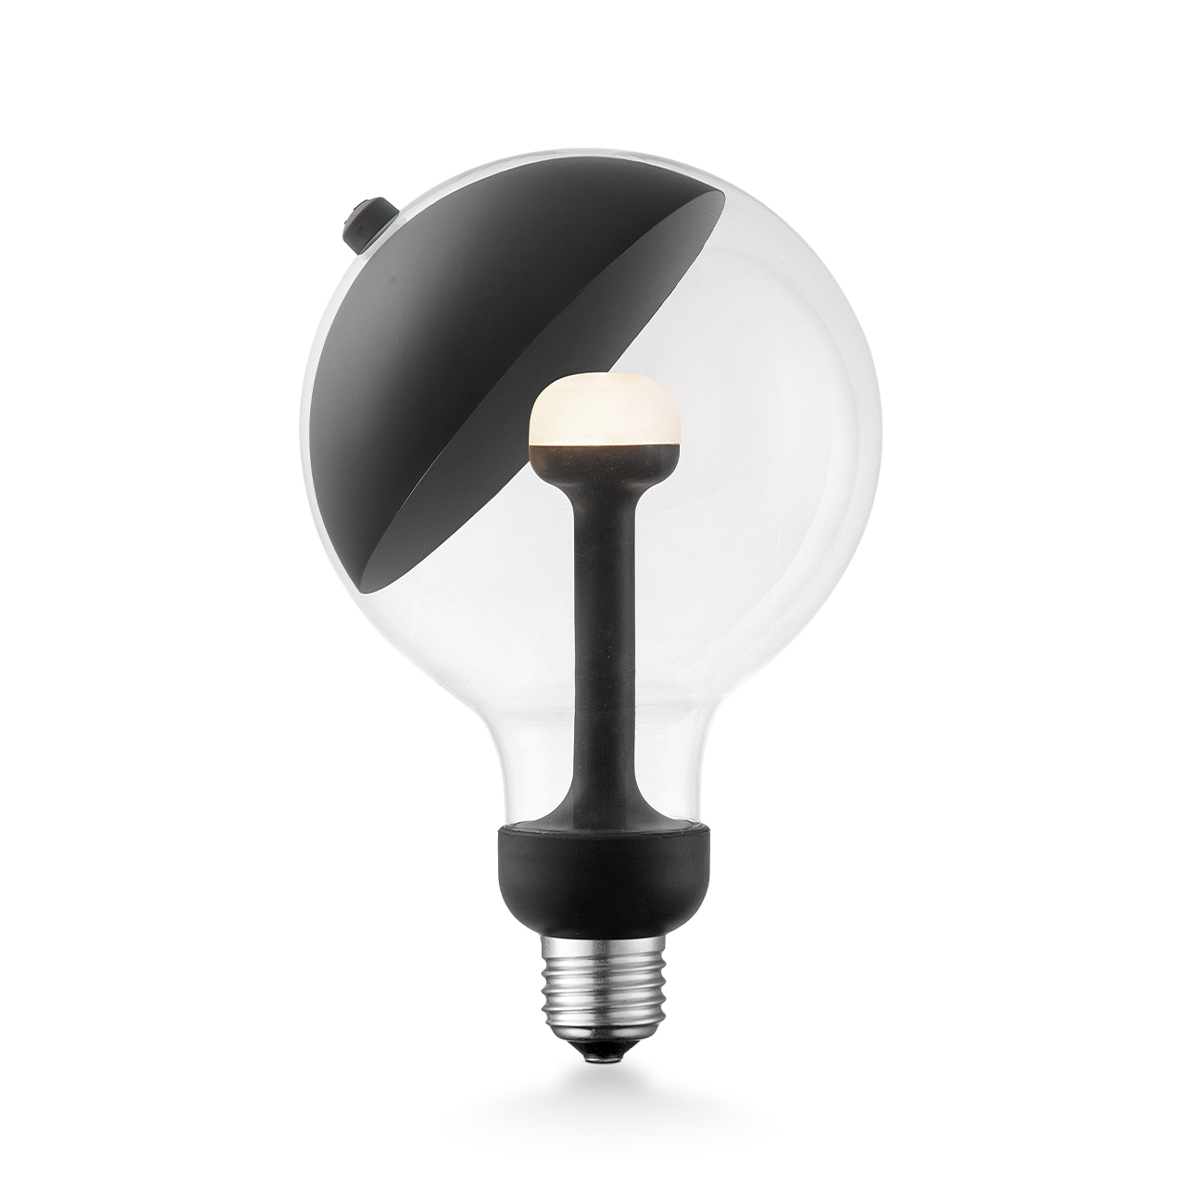 Tangla lighting - 0672-05-D - LED Light Bulb Move me - G120 5.5W Sphere black - dimmable - E27 / E26